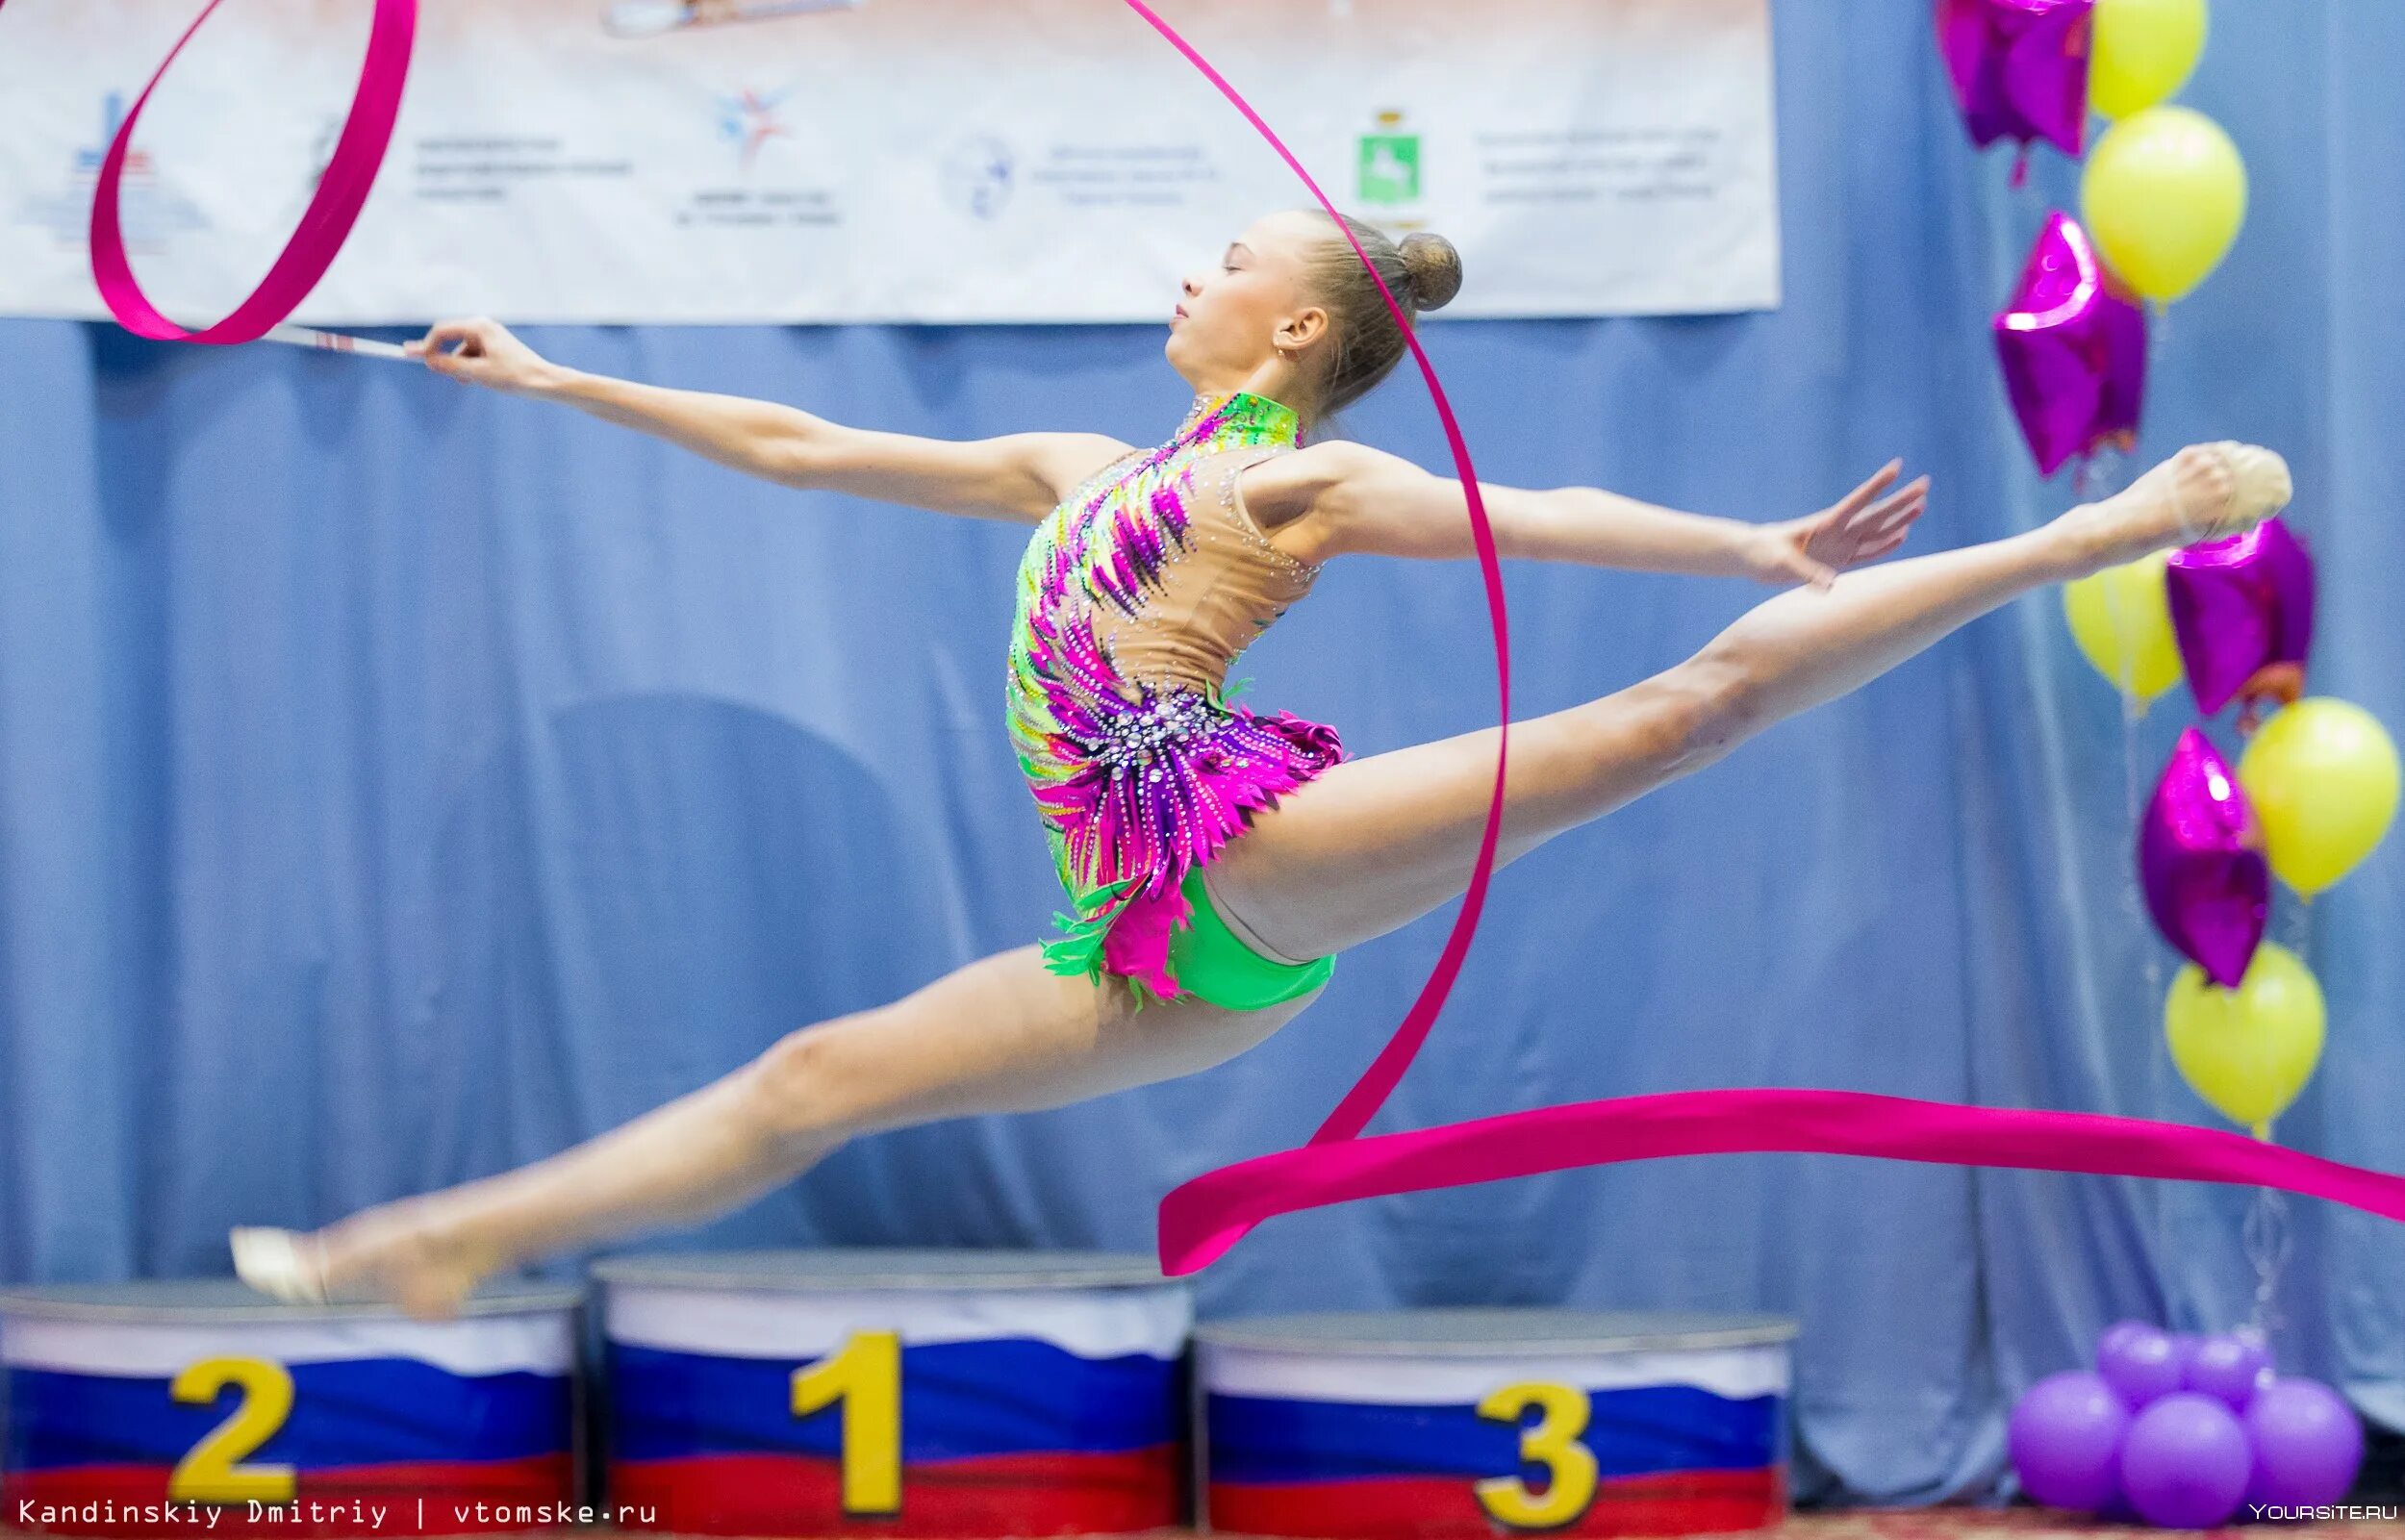 Художественная гимнастика Муравенкова. Спорт вокруг соревнования по художественной гимнастике